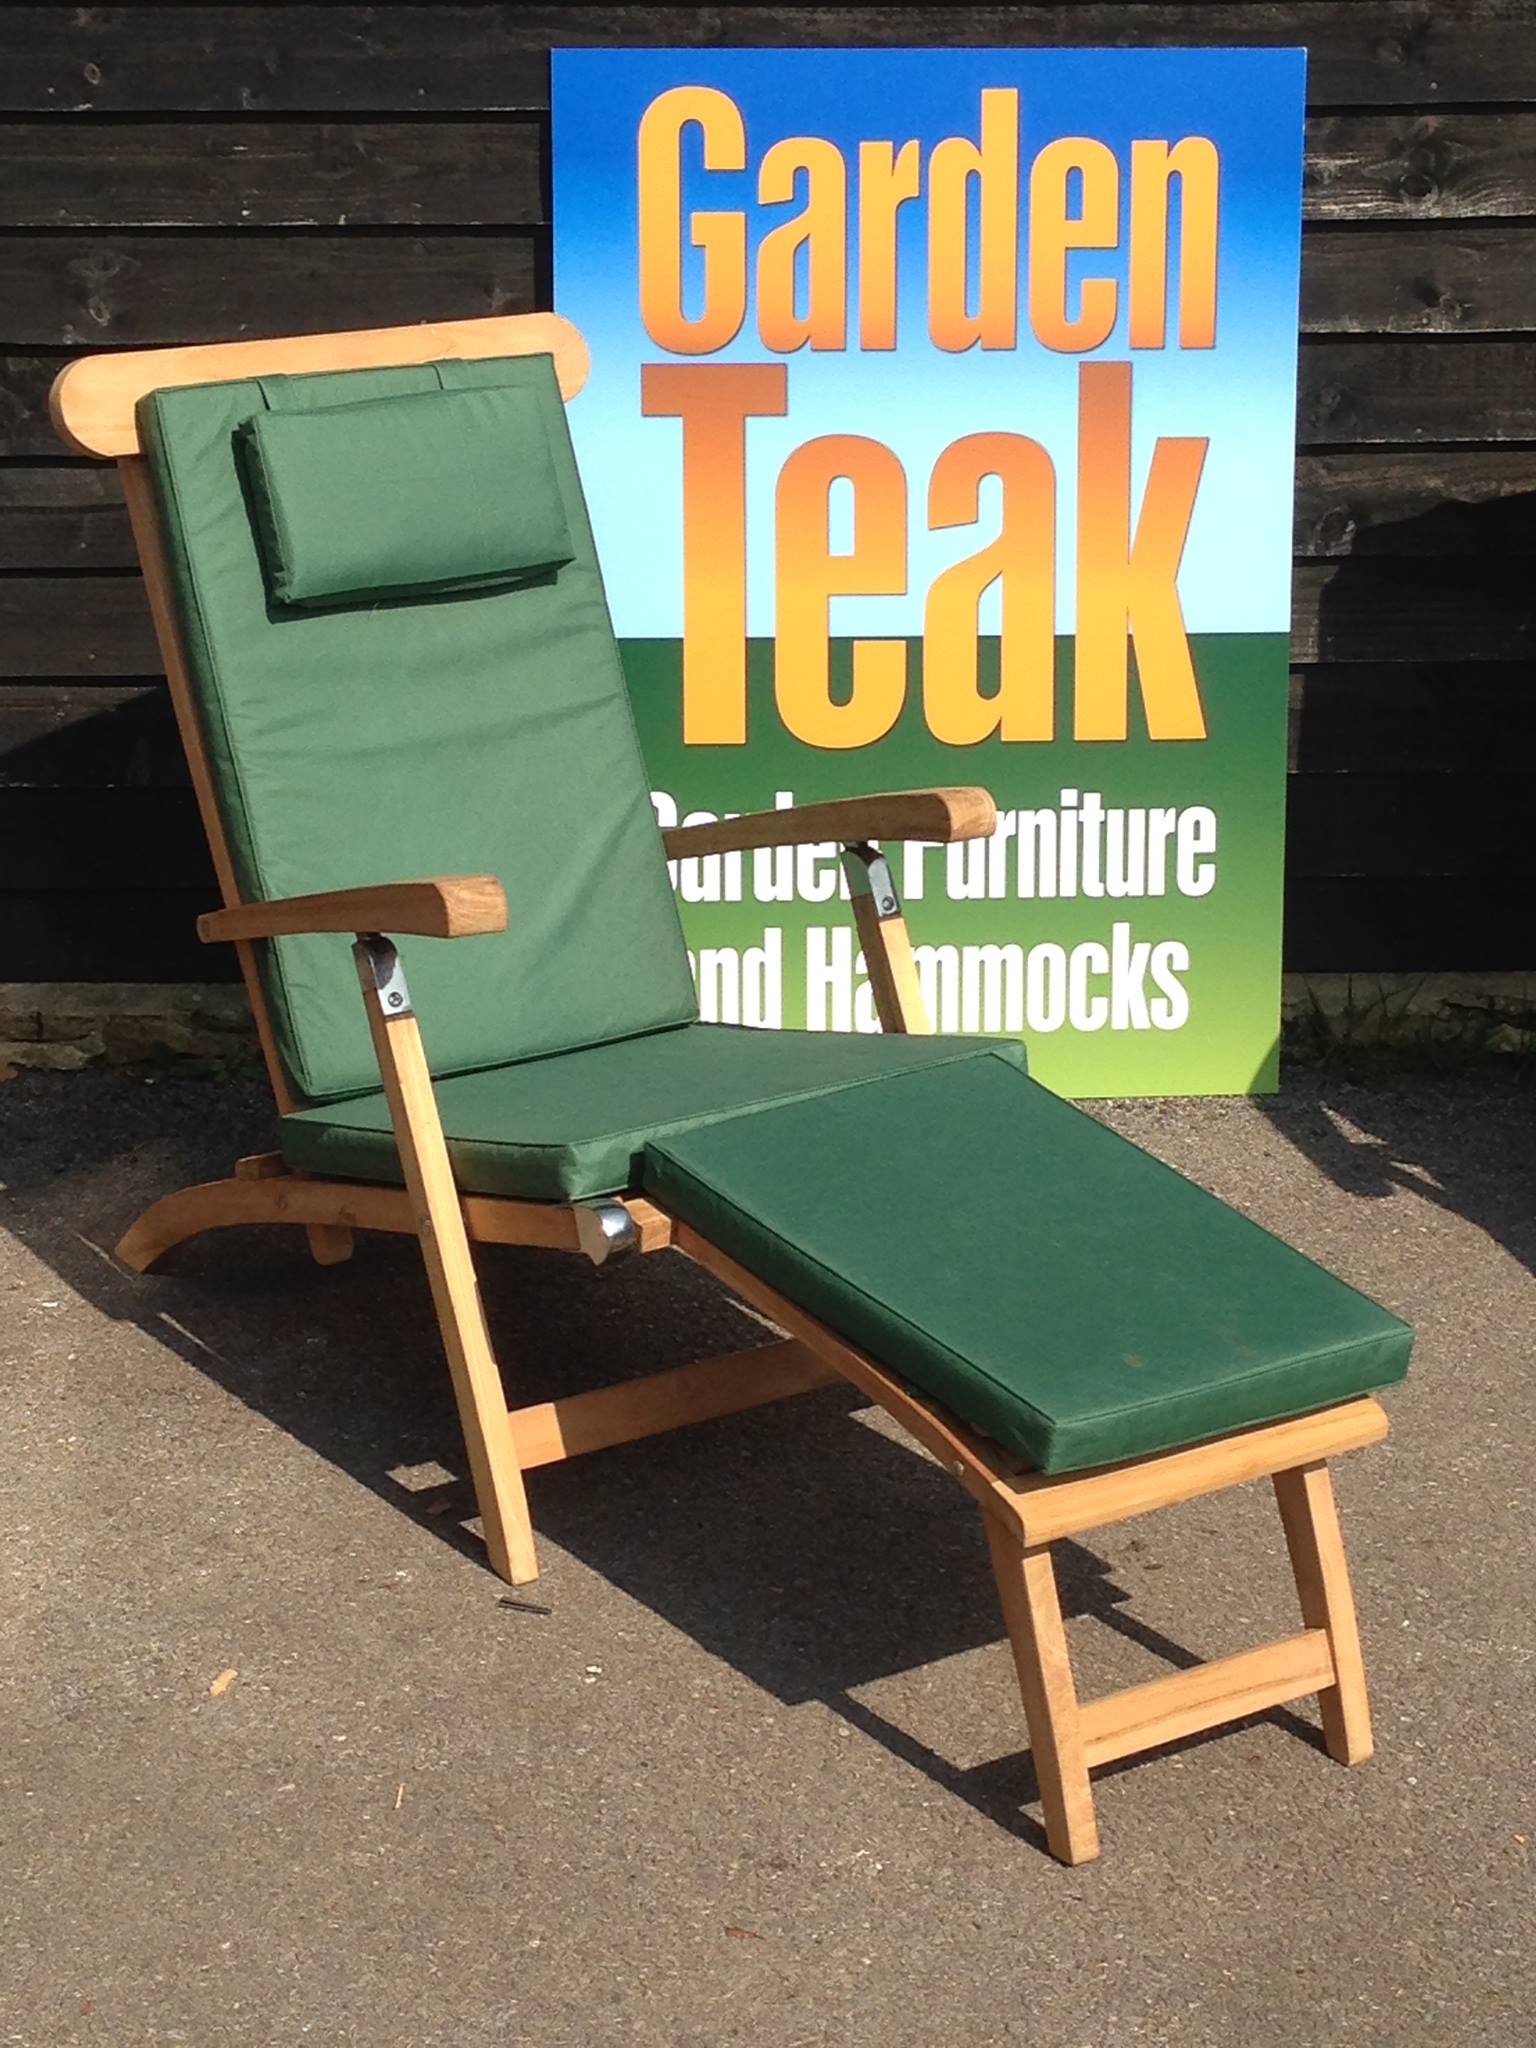 Villa & Hut Teak Steamer Chair with Cushion £199